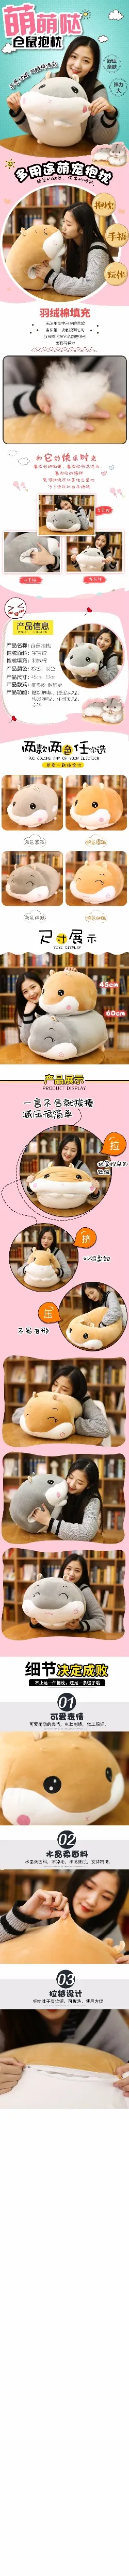 45 см Горячая креативная грелка для рук мягкая подушка хомяк плюшевая игрушка для детей офис плюшевая аниме плюшевая кукла